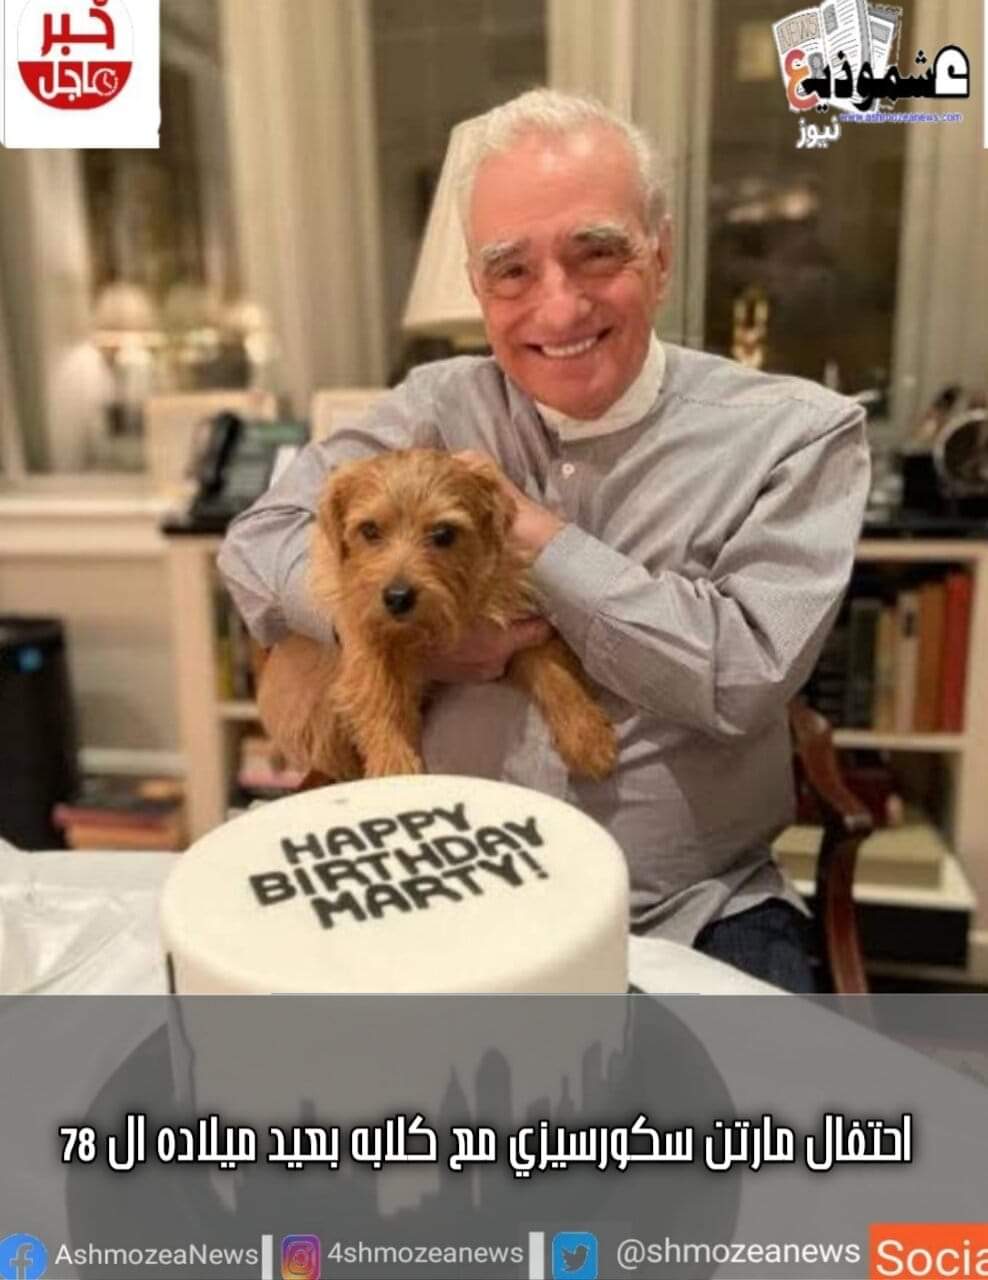 احتفال مارتن سكورسيزي مع كلابه بعيد ميلاده ال 78